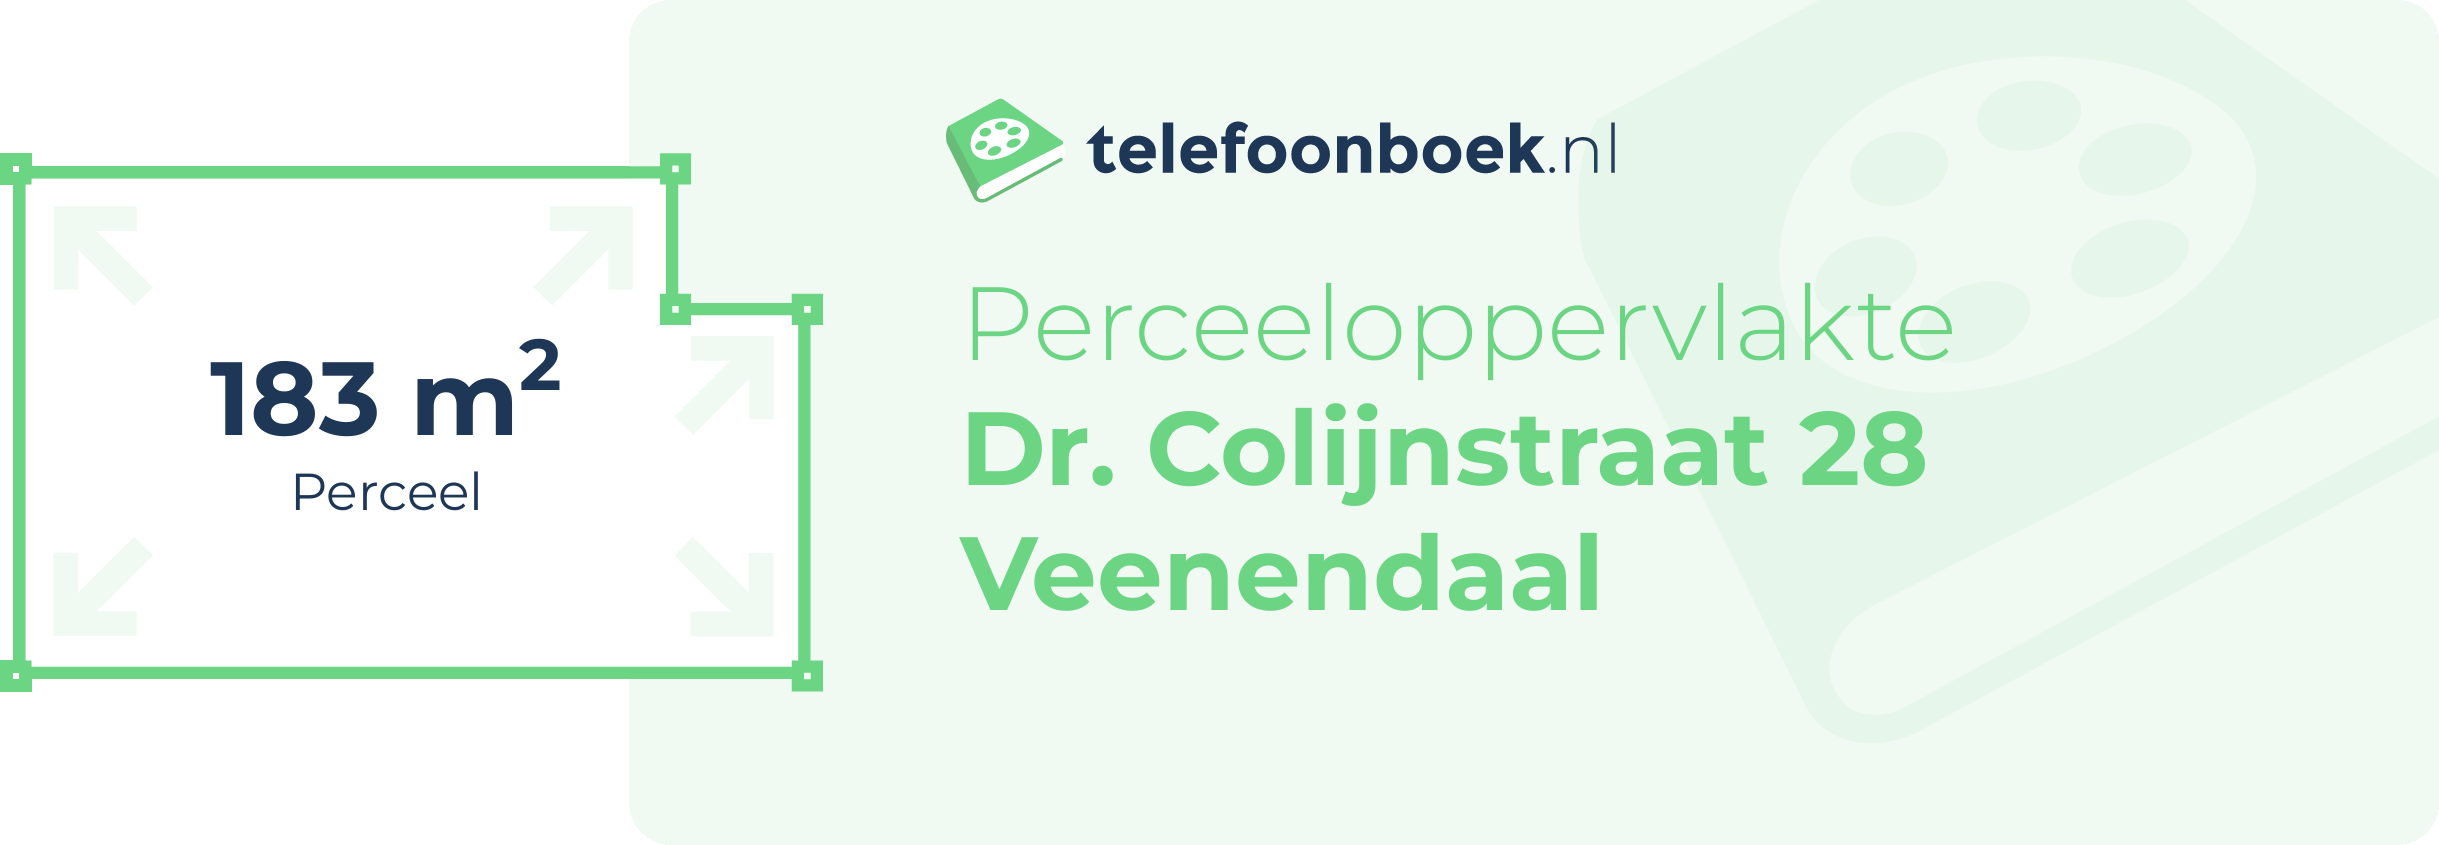 Perceeloppervlakte Dr. Colijnstraat 28 Veenendaal